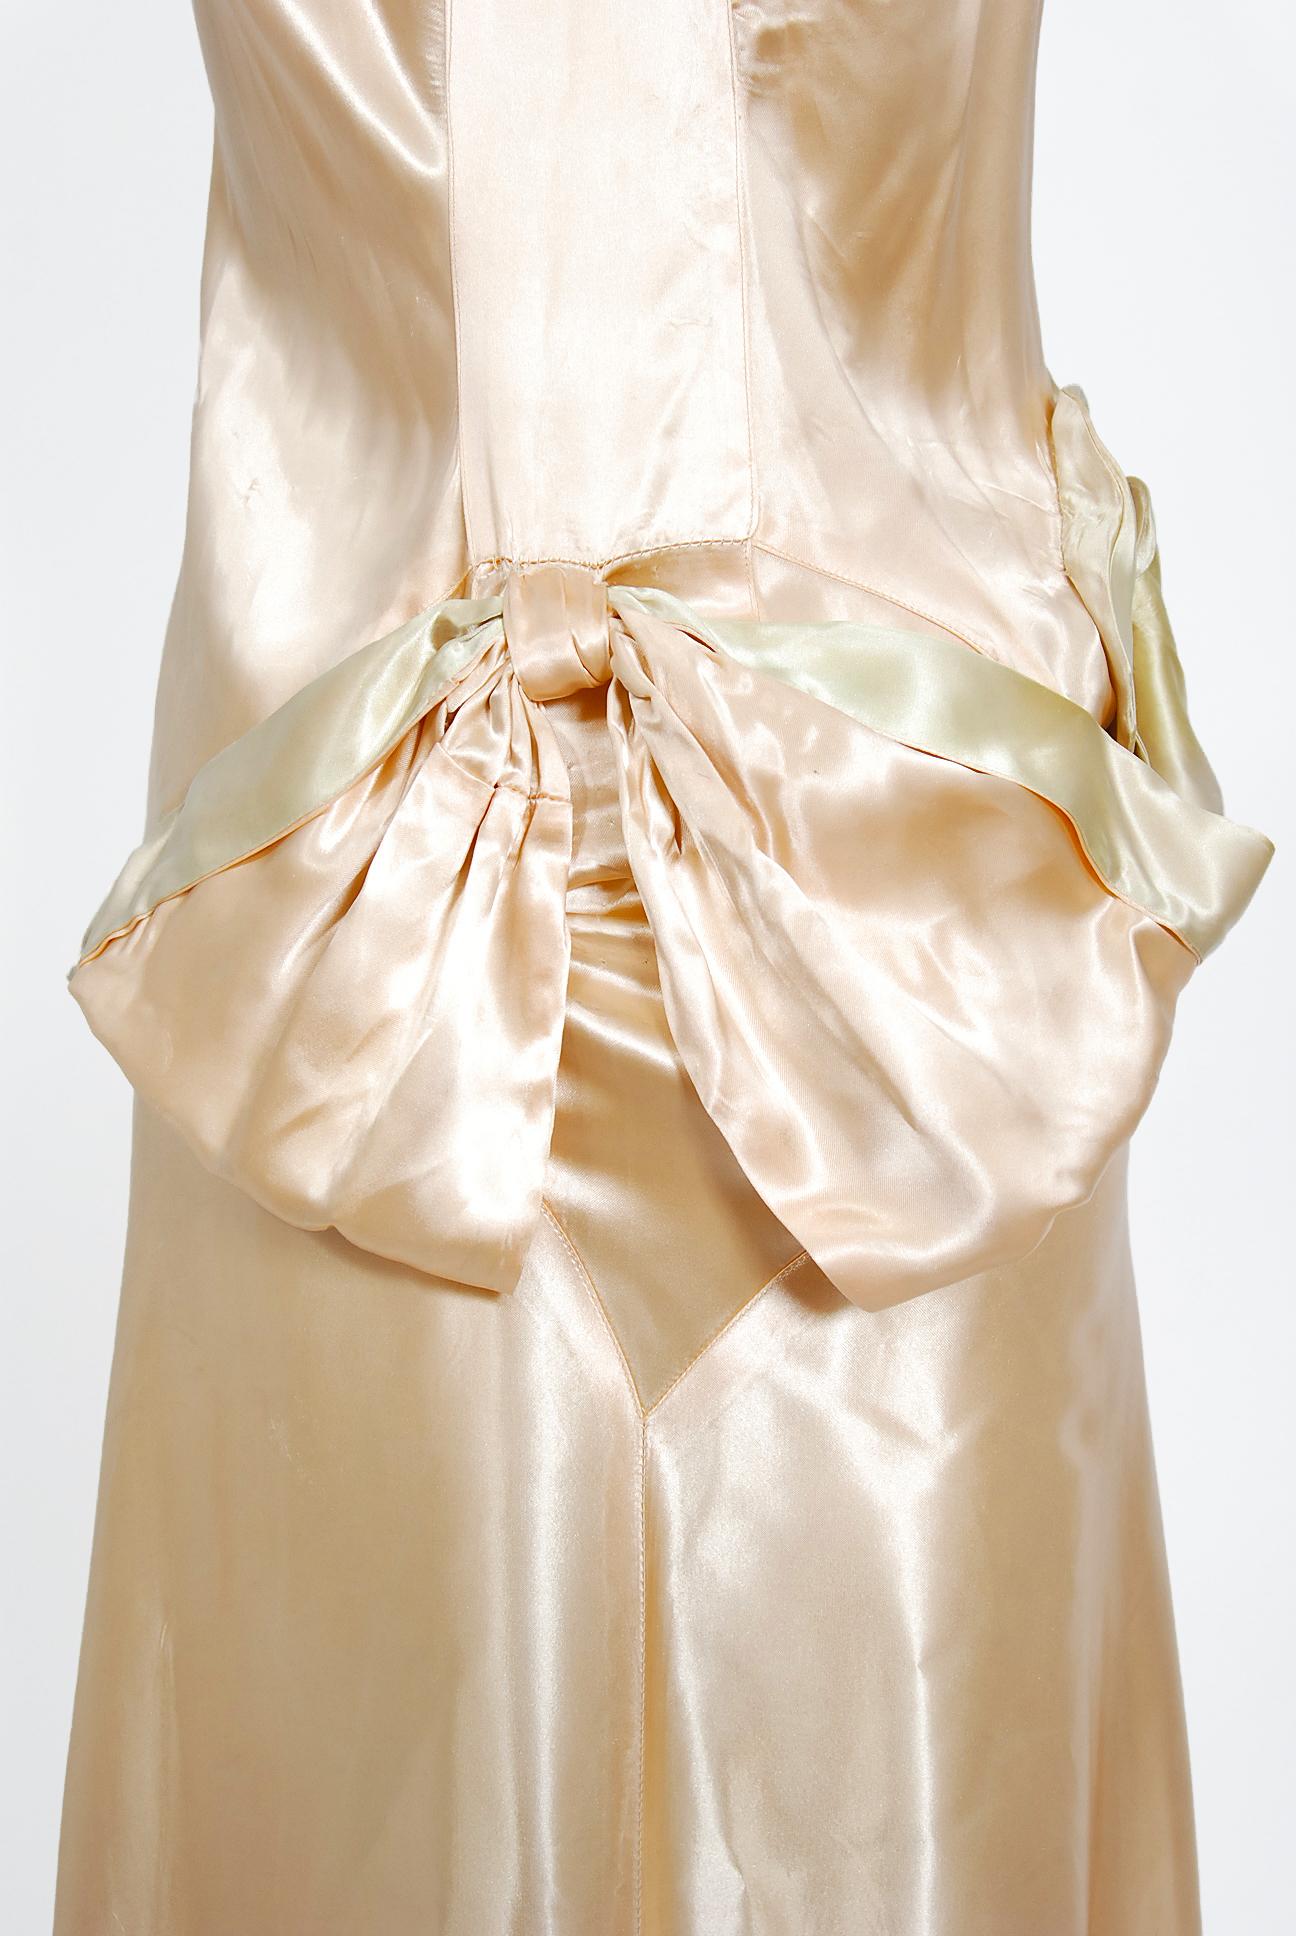 Vintage 1930's Champagne-Pink Silk Satin Floral Applique Bias-Cut Bridal Gown  1